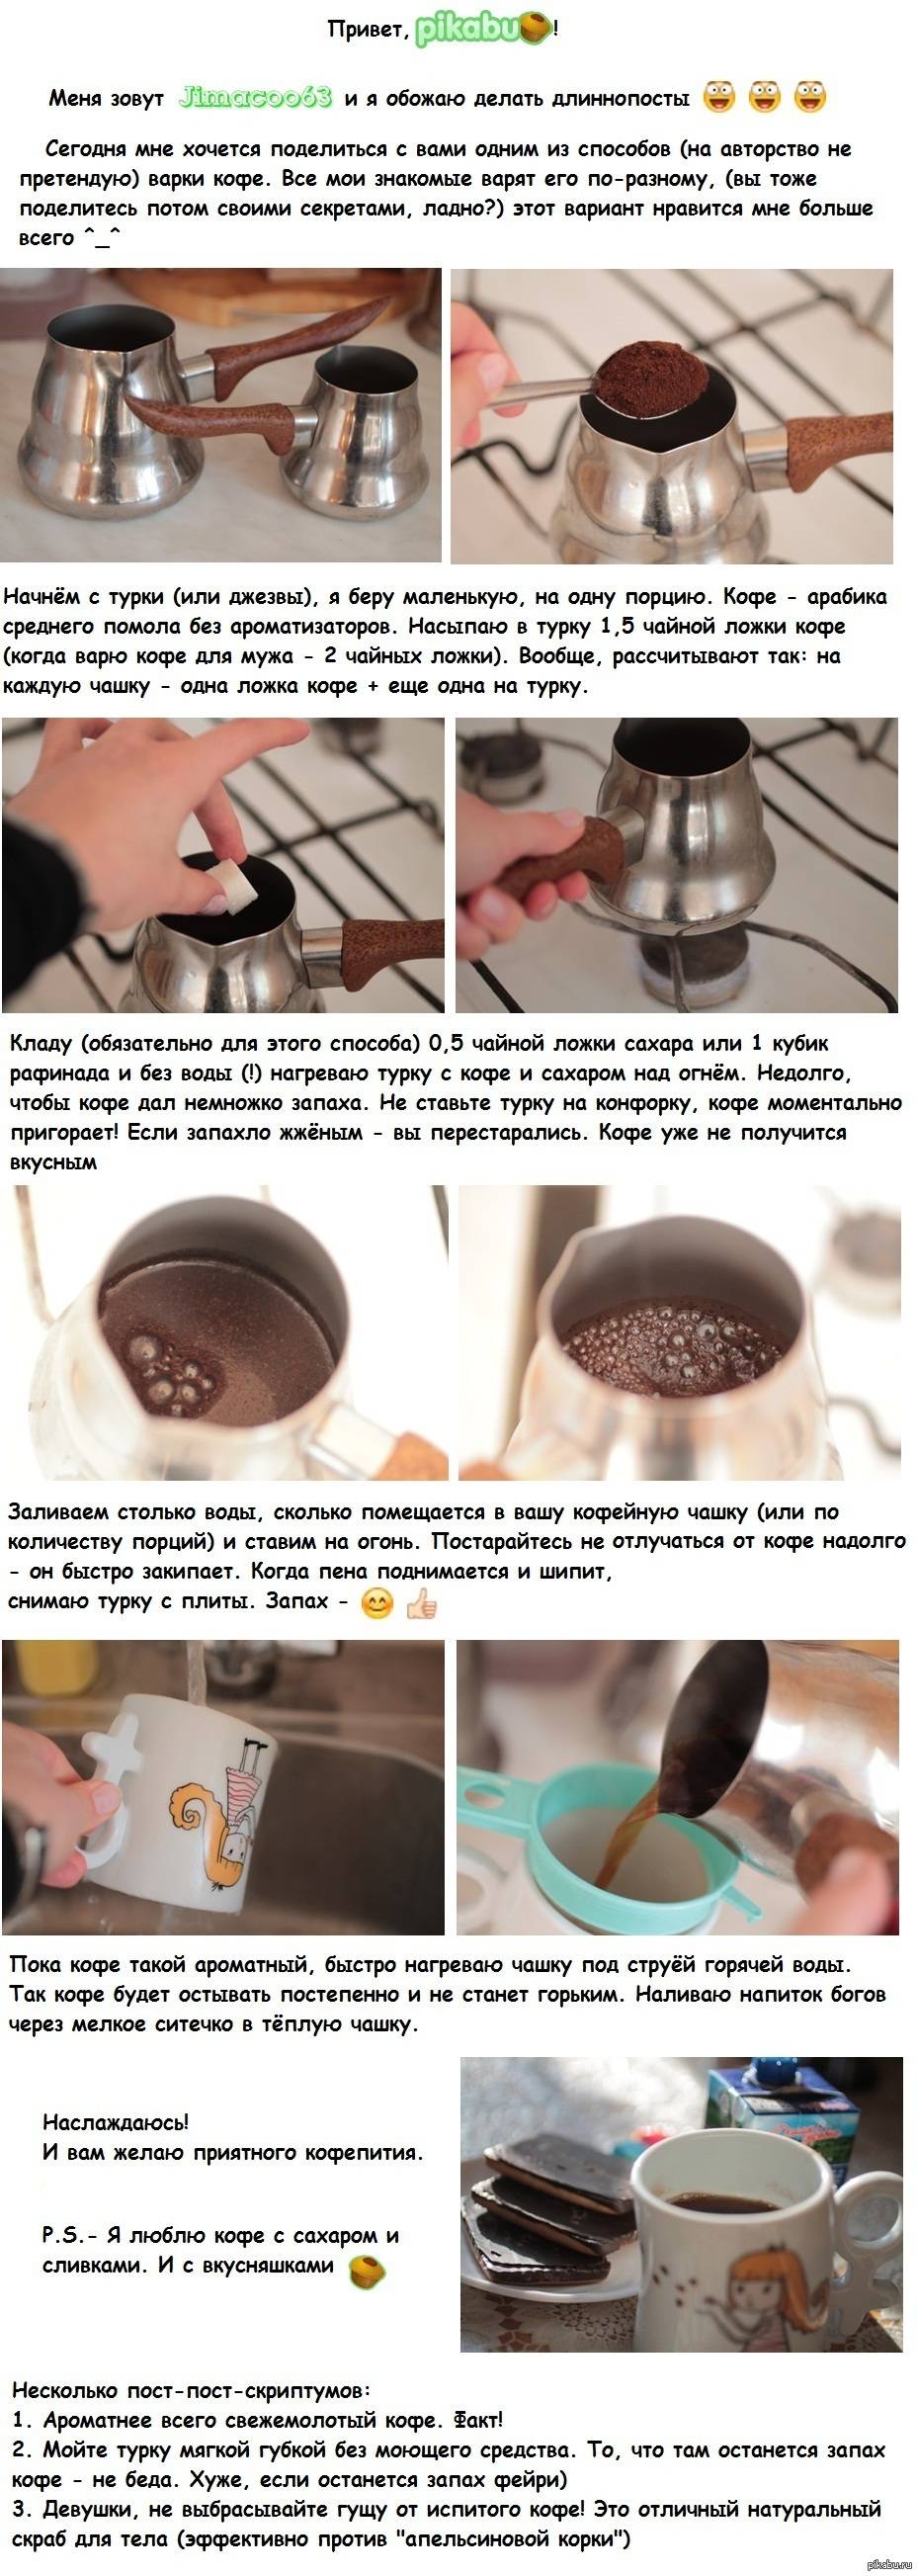 Кофе в микроволновке – рецепт и советы по приготовлению